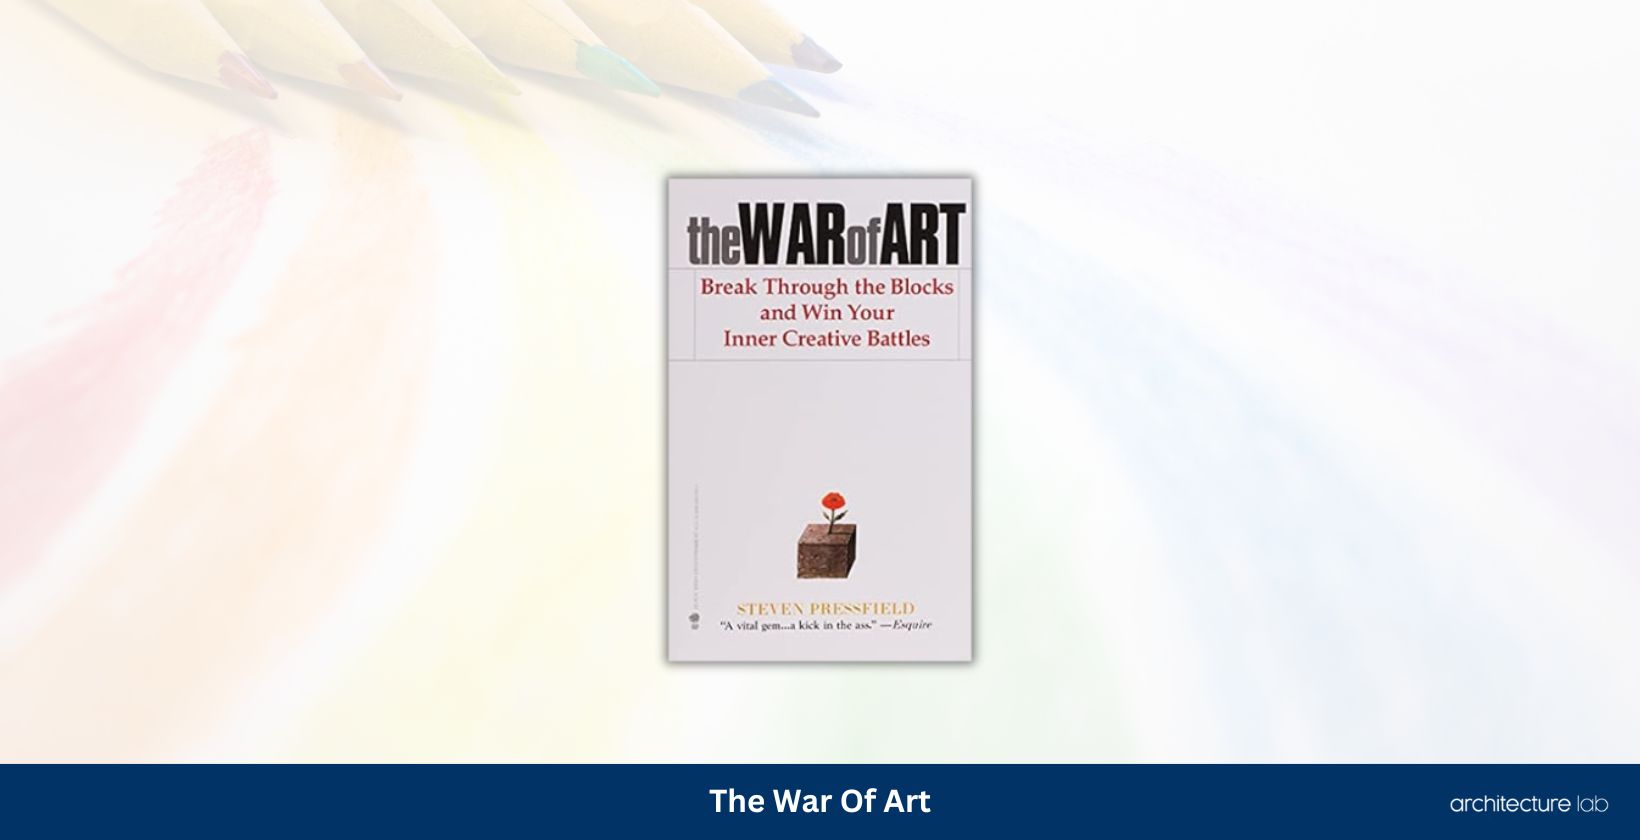 The war of art